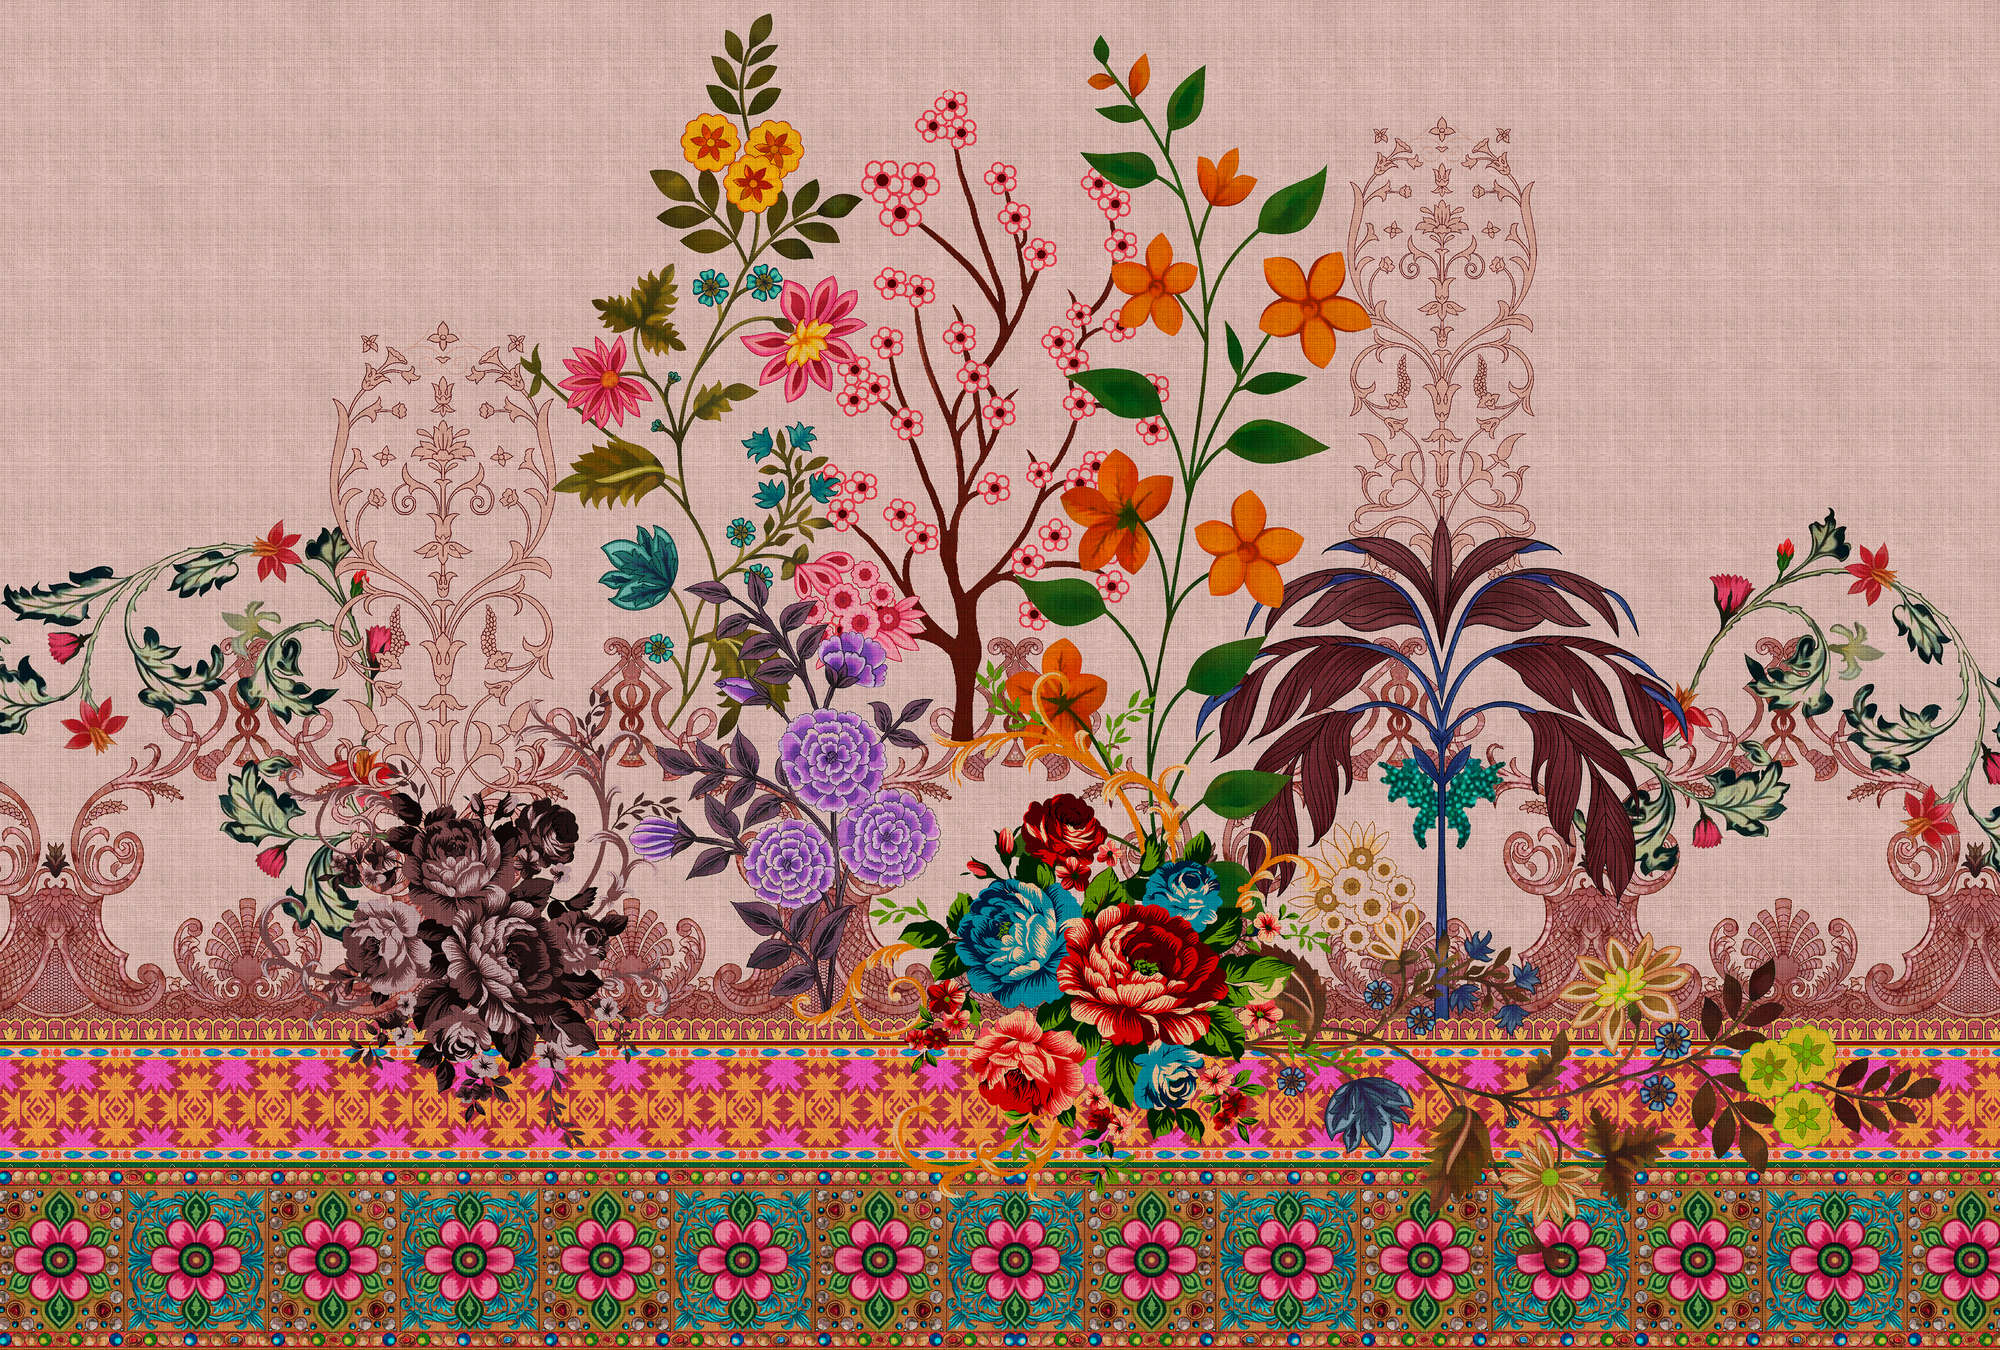             Oriental Garden 4 - Papier peint fleuri Motifs de fleurs et de bordures
        